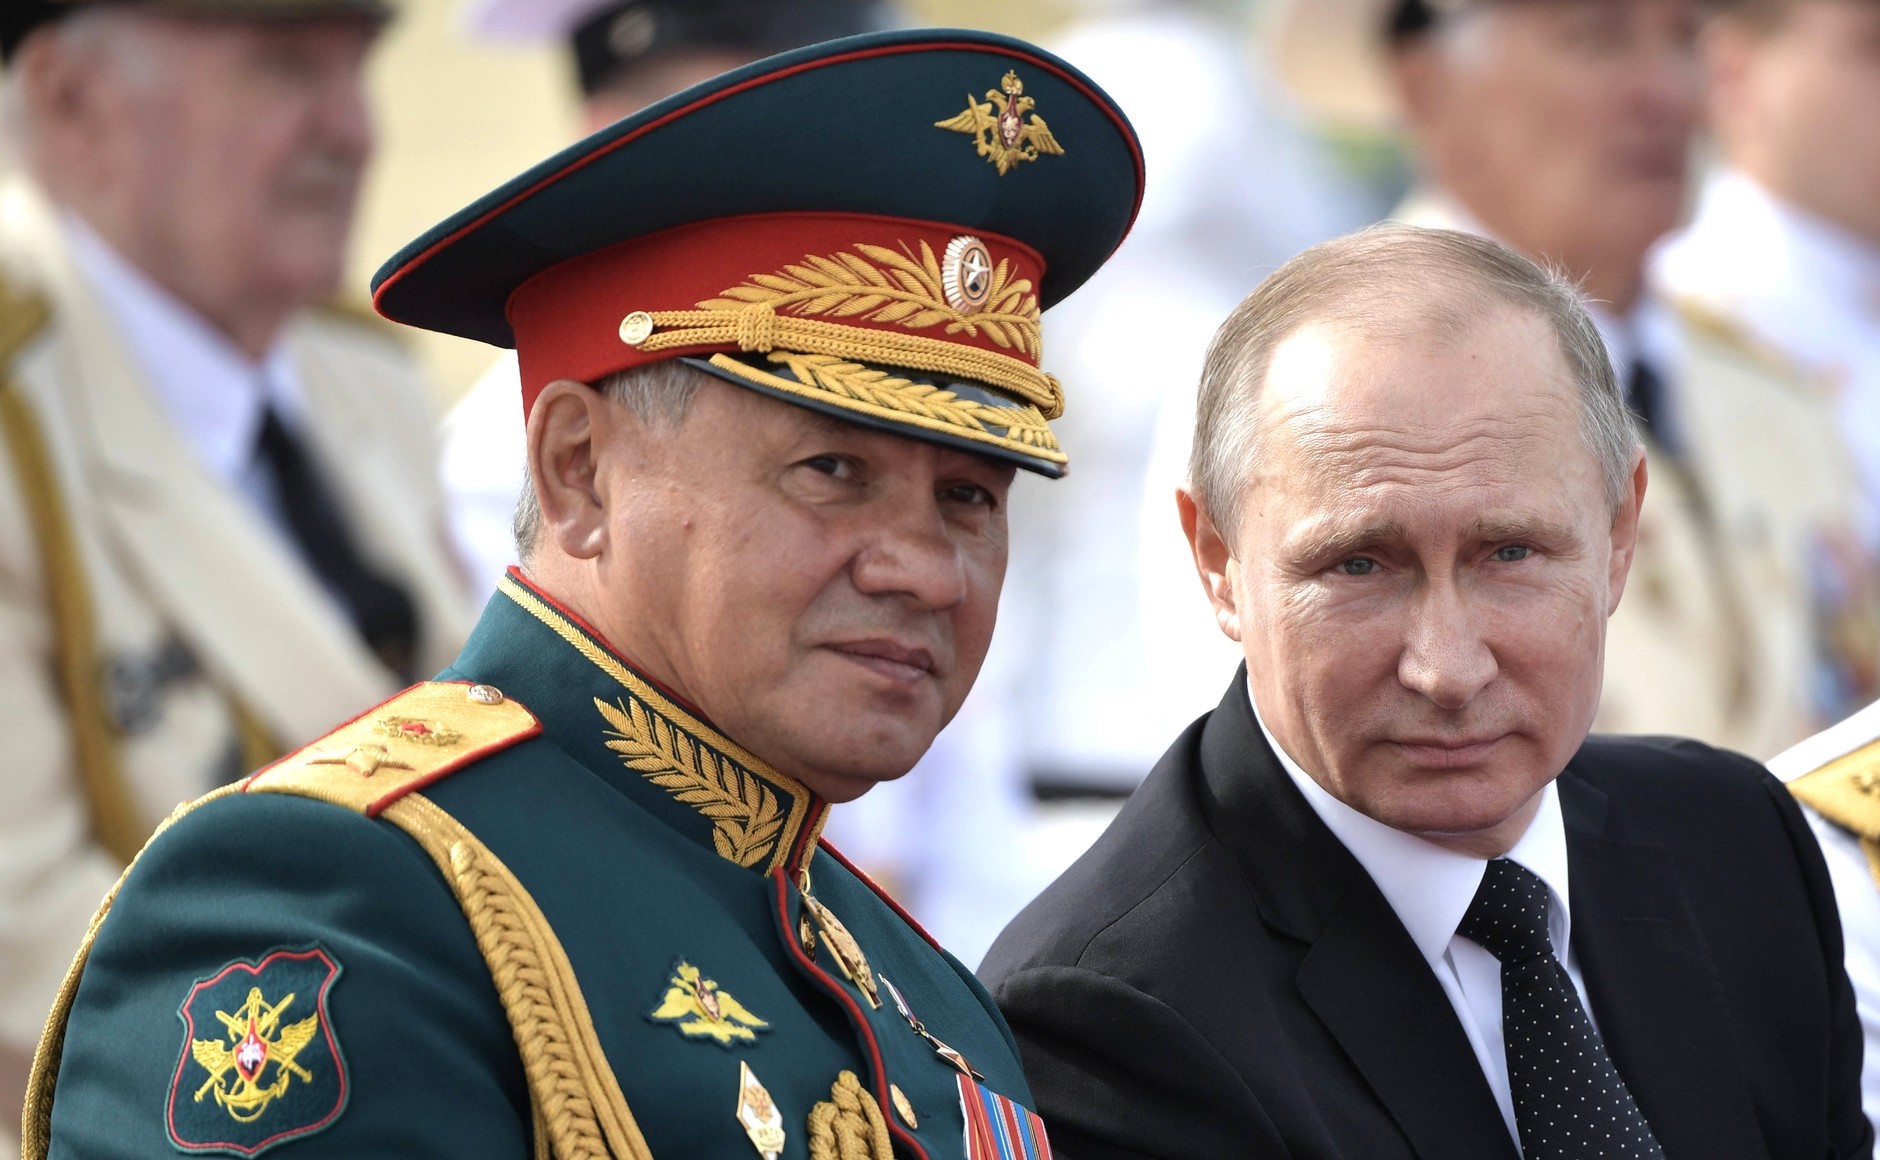 Bild: Kremlin.ru, CC BY 4.0, Vladimir Putin and Sergey Shoigu - Saint-Petersburg 2017-07-30 (1).jpg, via Wikimedia Commons (keine Änderungen vorgenommen)